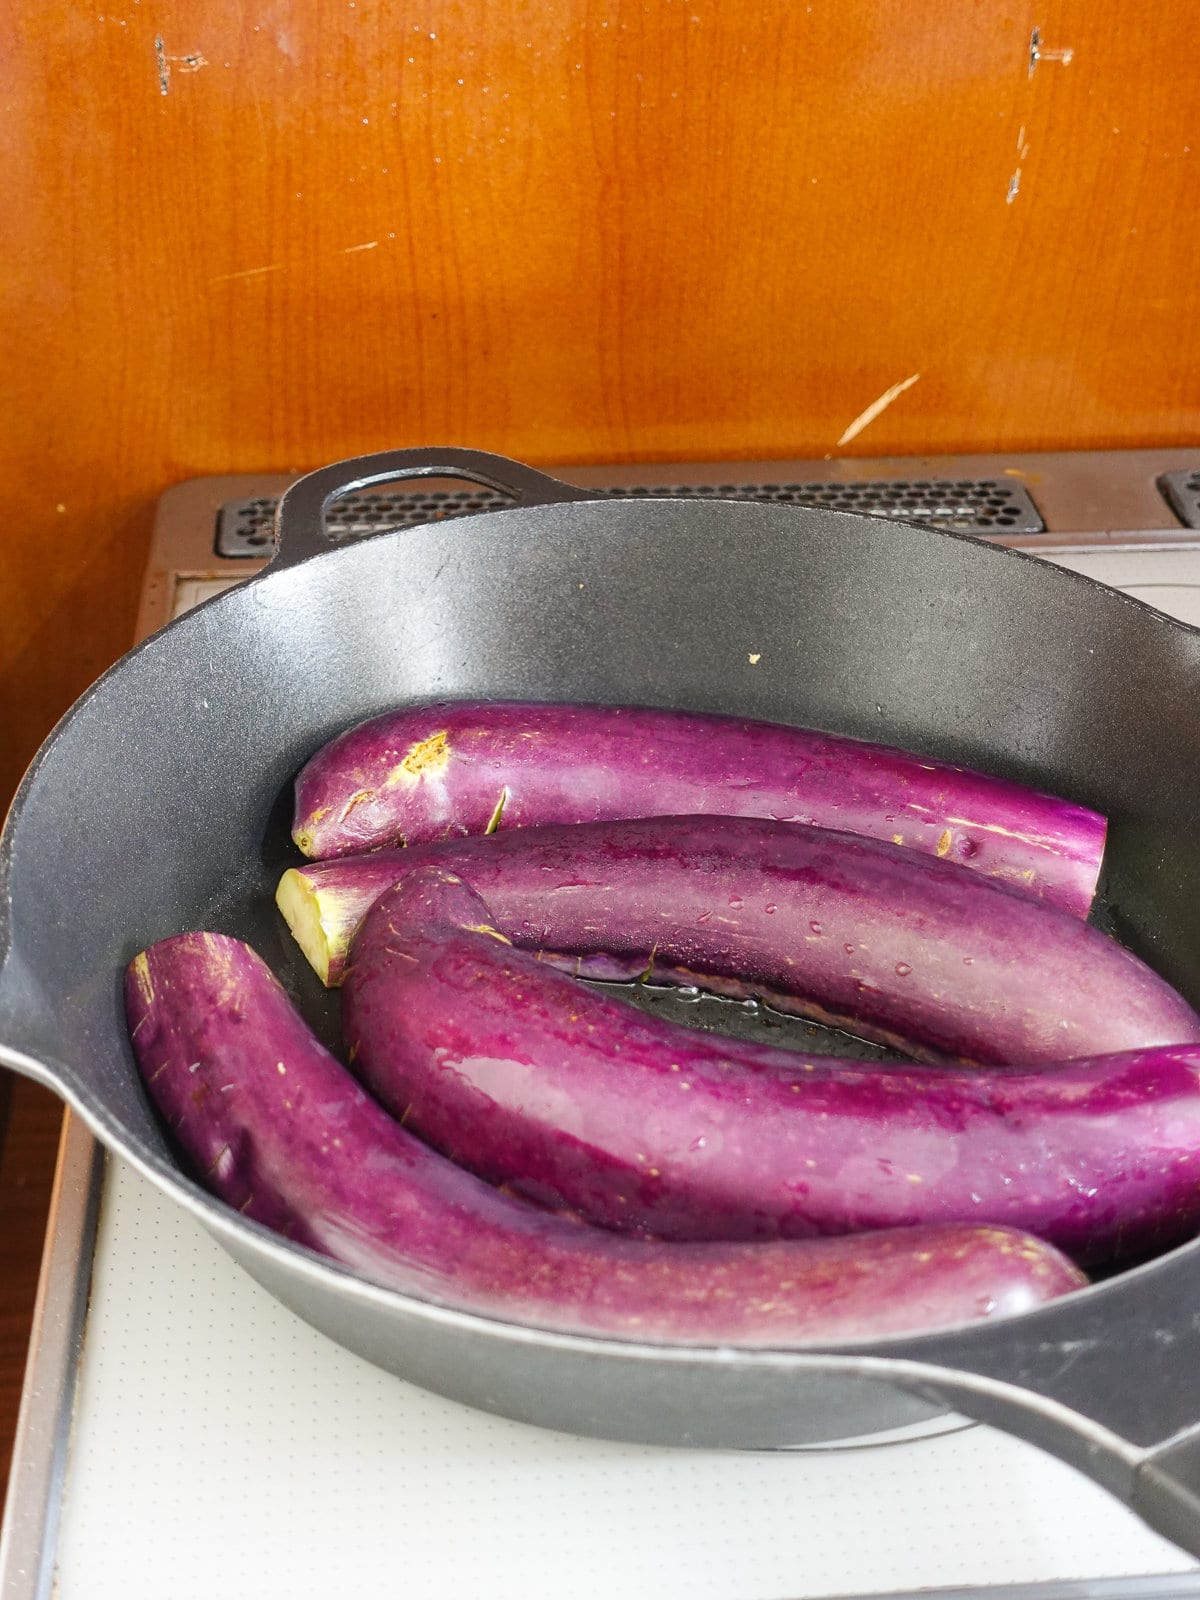 Fry eggplant